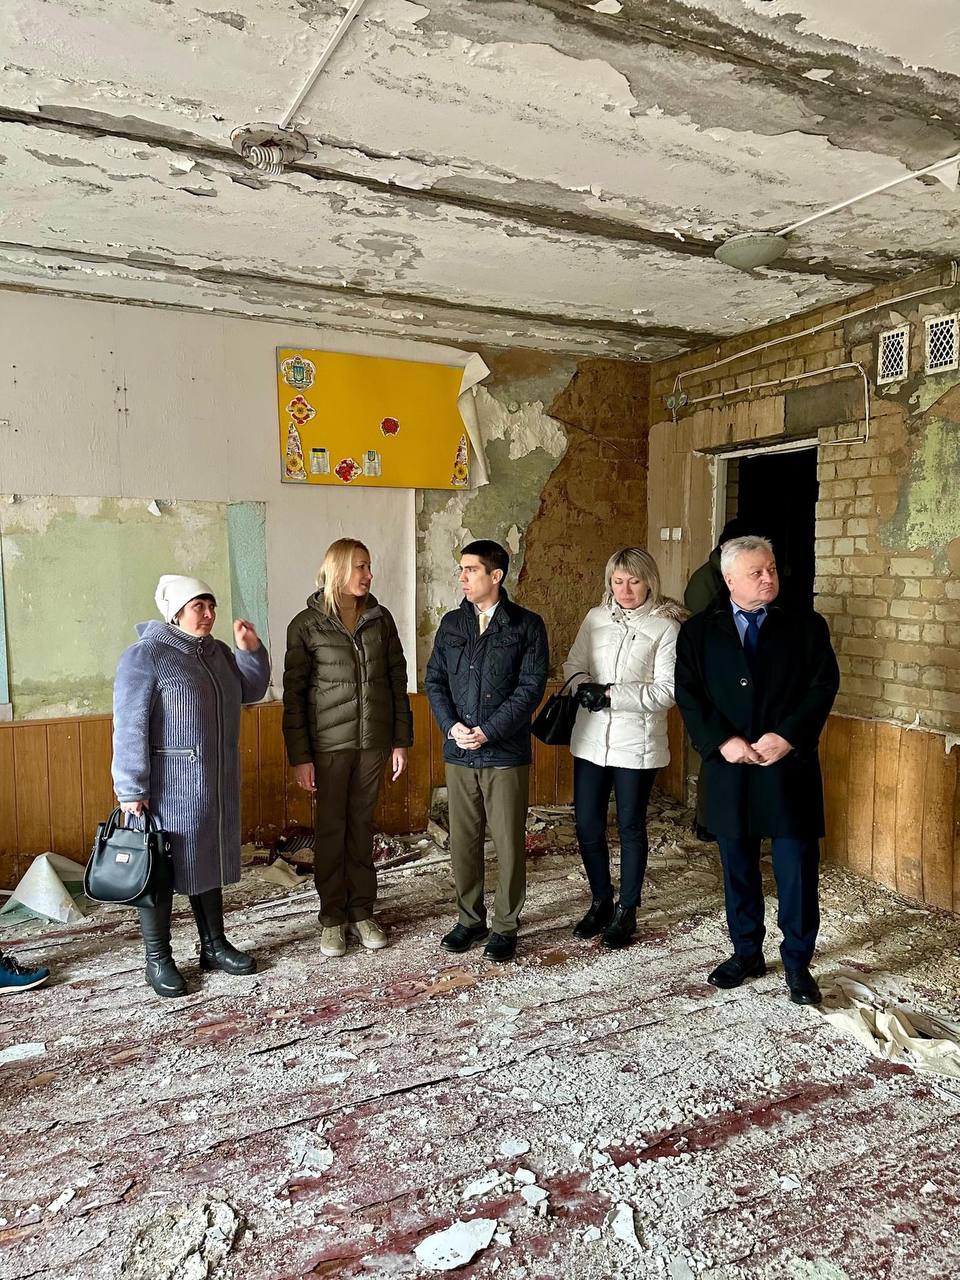 Popșoi a vizitat o școală din Ucraina, distrusă în război: „Rusia trebuie să achite pentru toate pagubele provocate”